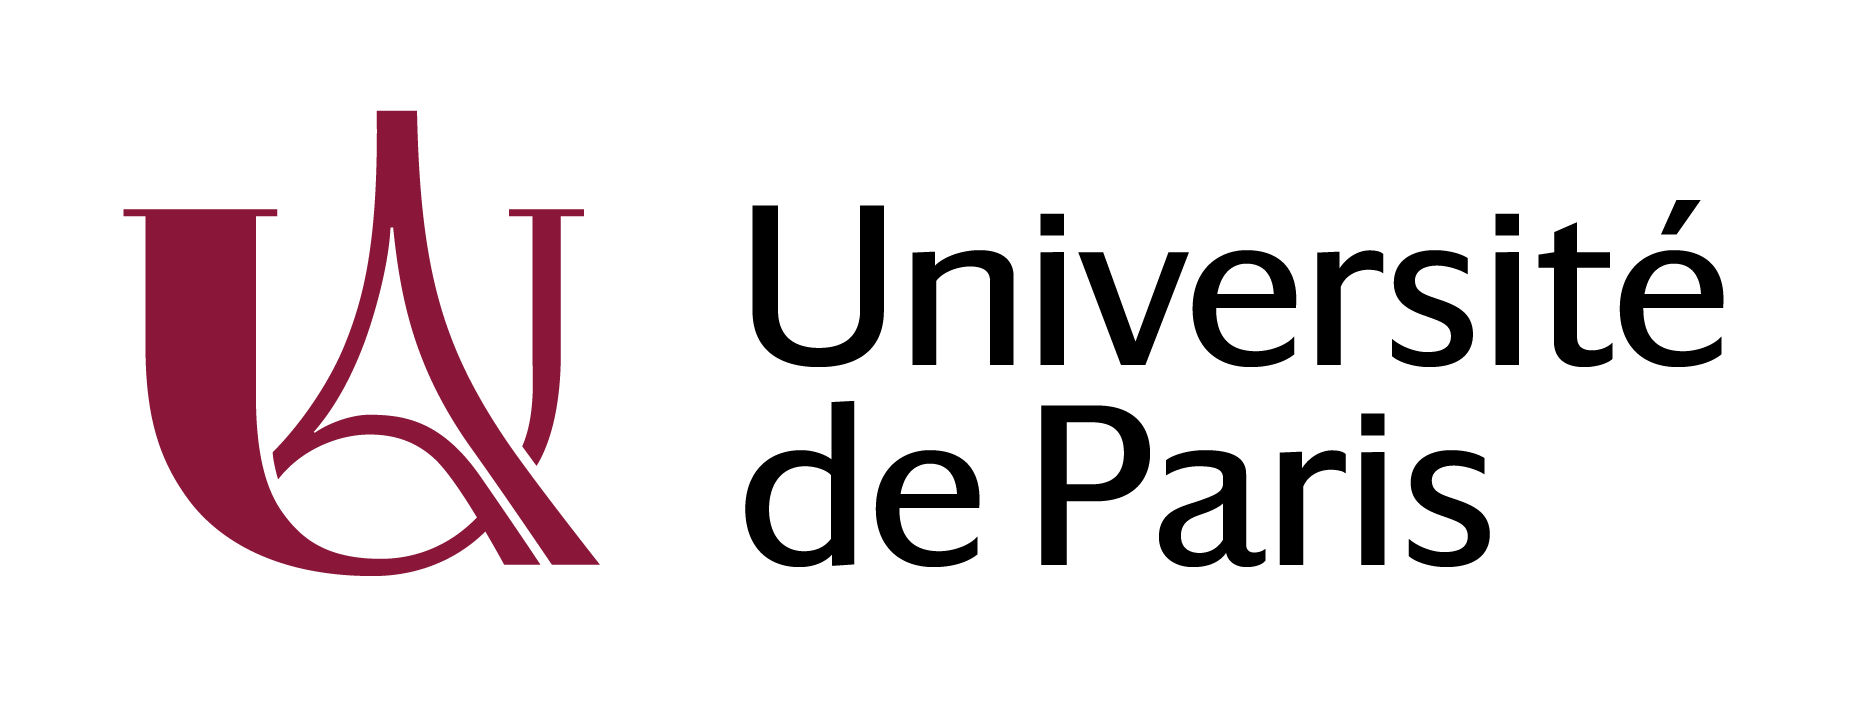 Charte graphique et outils | Université de Paris